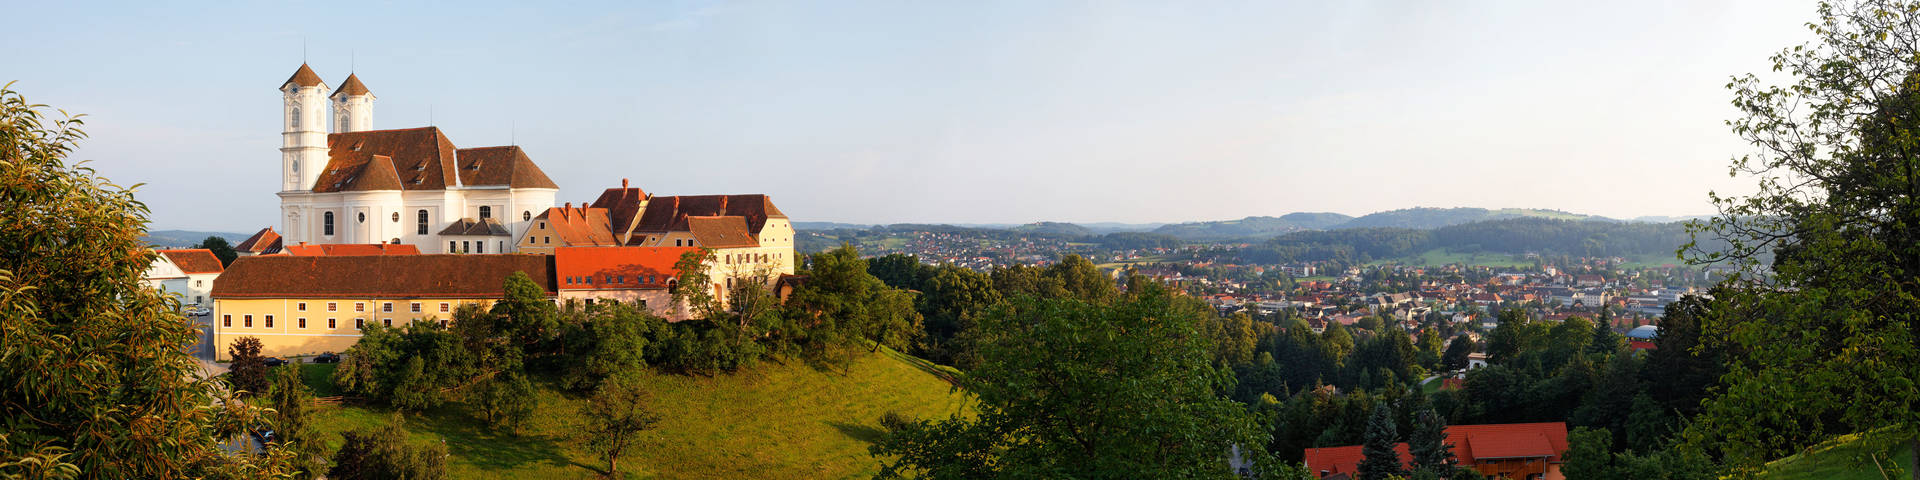 Panoramabild von Weiz und der Basilika am Weizberg